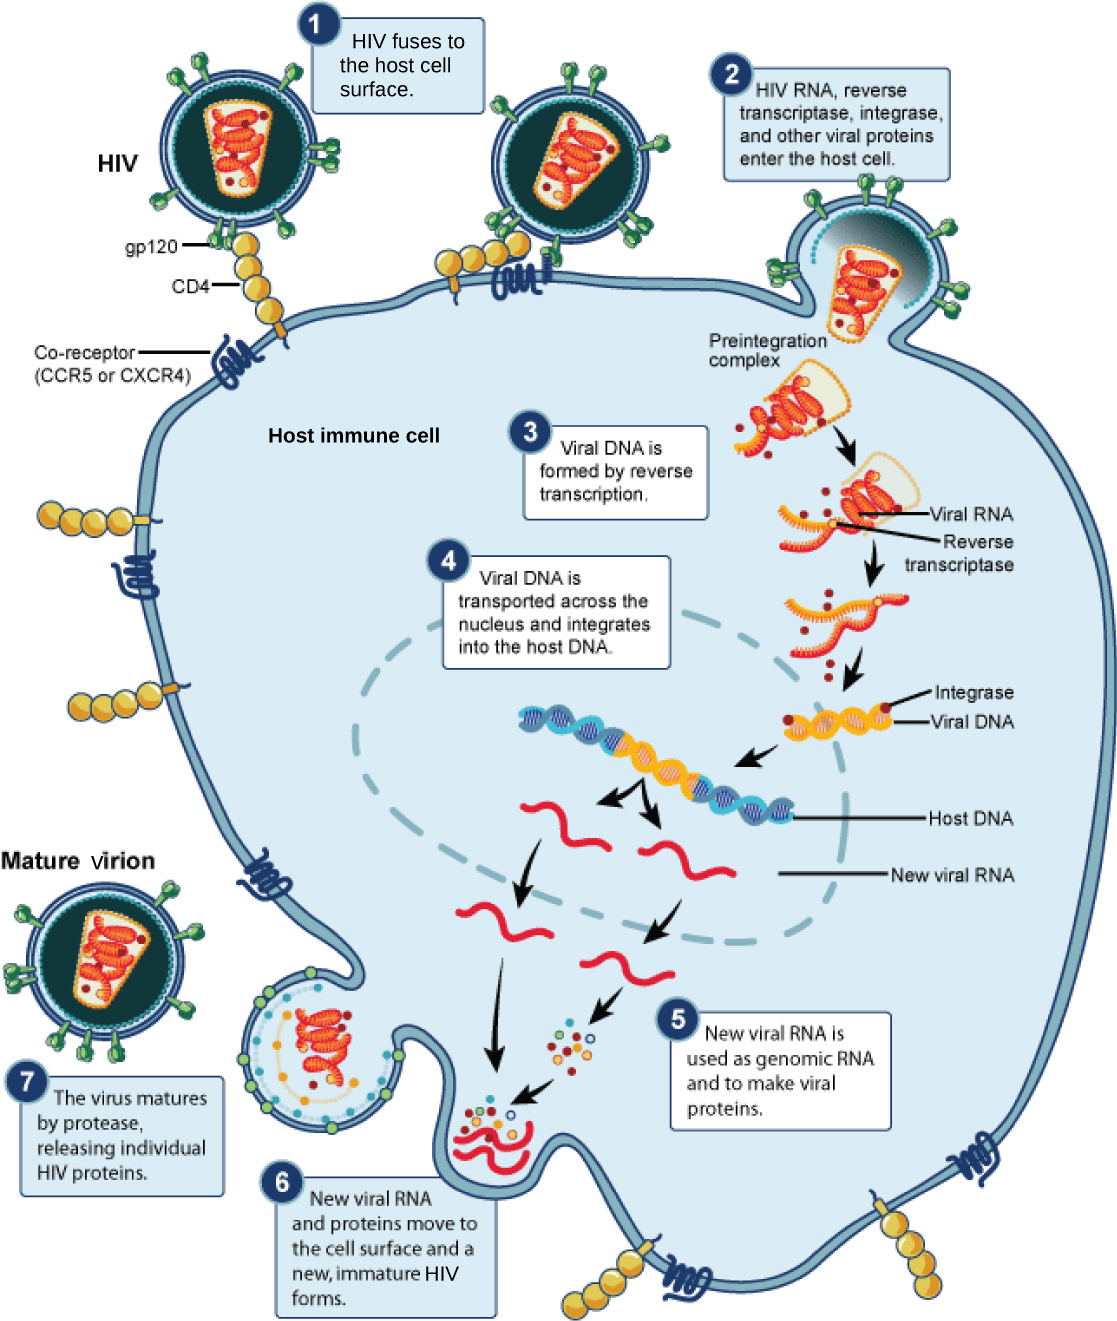 L'illustration montre les étapes du cycle de vie du VIH. À l'étape 1, les glycoprotéines gp120 présentes dans l'enveloppe virale se fixent à un récepteur CD4 situé sur la membrane de la cellule hôte. Les glycoprotéines se fixent ensuite à un corécepteur, CCR5 ou CXCR4, et l'enveloppe virale fusionne avec la membrane cellulaire. L'ARN du VIH, la transcriptase inverse et d'autres protéines virales sont libérés dans la cellule hôte. L'ADN viral est formé à partir de l'ARN par transcriptase inverse. L'ADN viral est ensuite transporté à travers la membrane nucléaire, où il s'intègre dans l'ADN de l'hôte. Un nouvel ARN viral est fabriqué ; il est utilisé comme ARN génomique et pour fabriquer des protéines virales. De nouveaux ARN et protéines viraux se déplacent vers la surface des cellules et un nouveau VIH immature se forme. Le virus arrive à maturité lorsqu'une protéase libère des protéines individuelles du VIH.